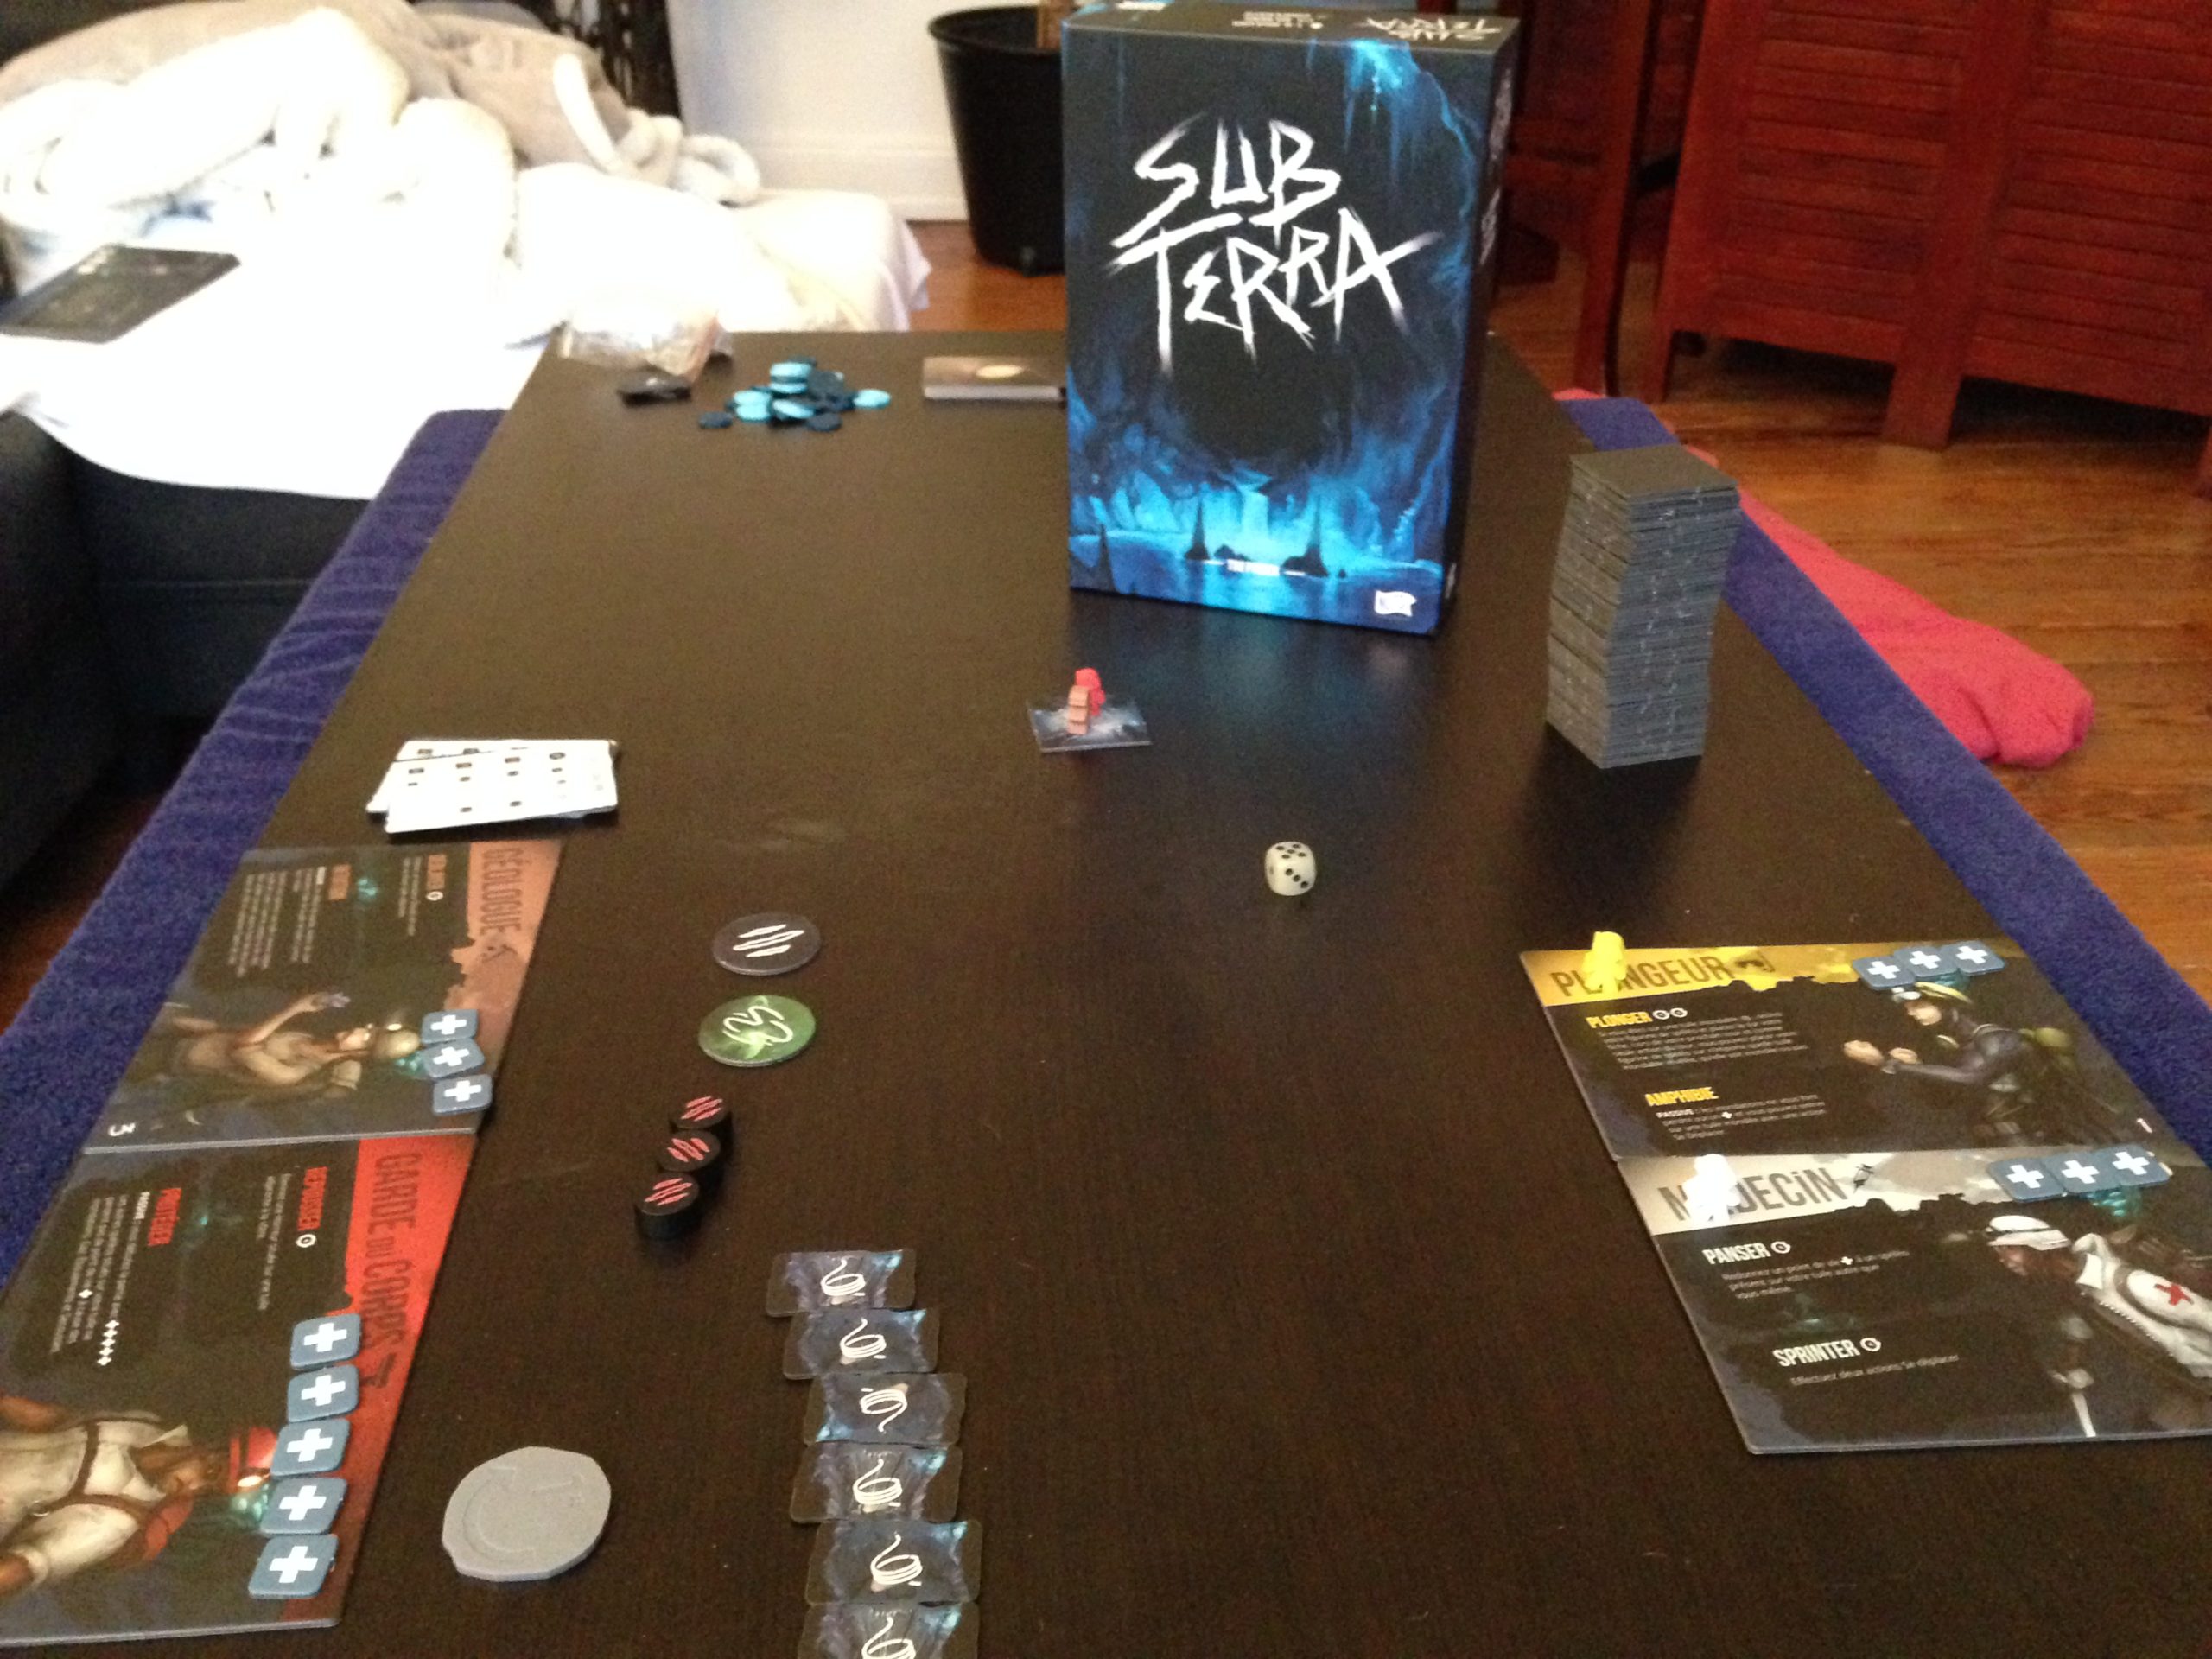 ▷ Sub Terra - Test et avis du jeu escape game d'horreur